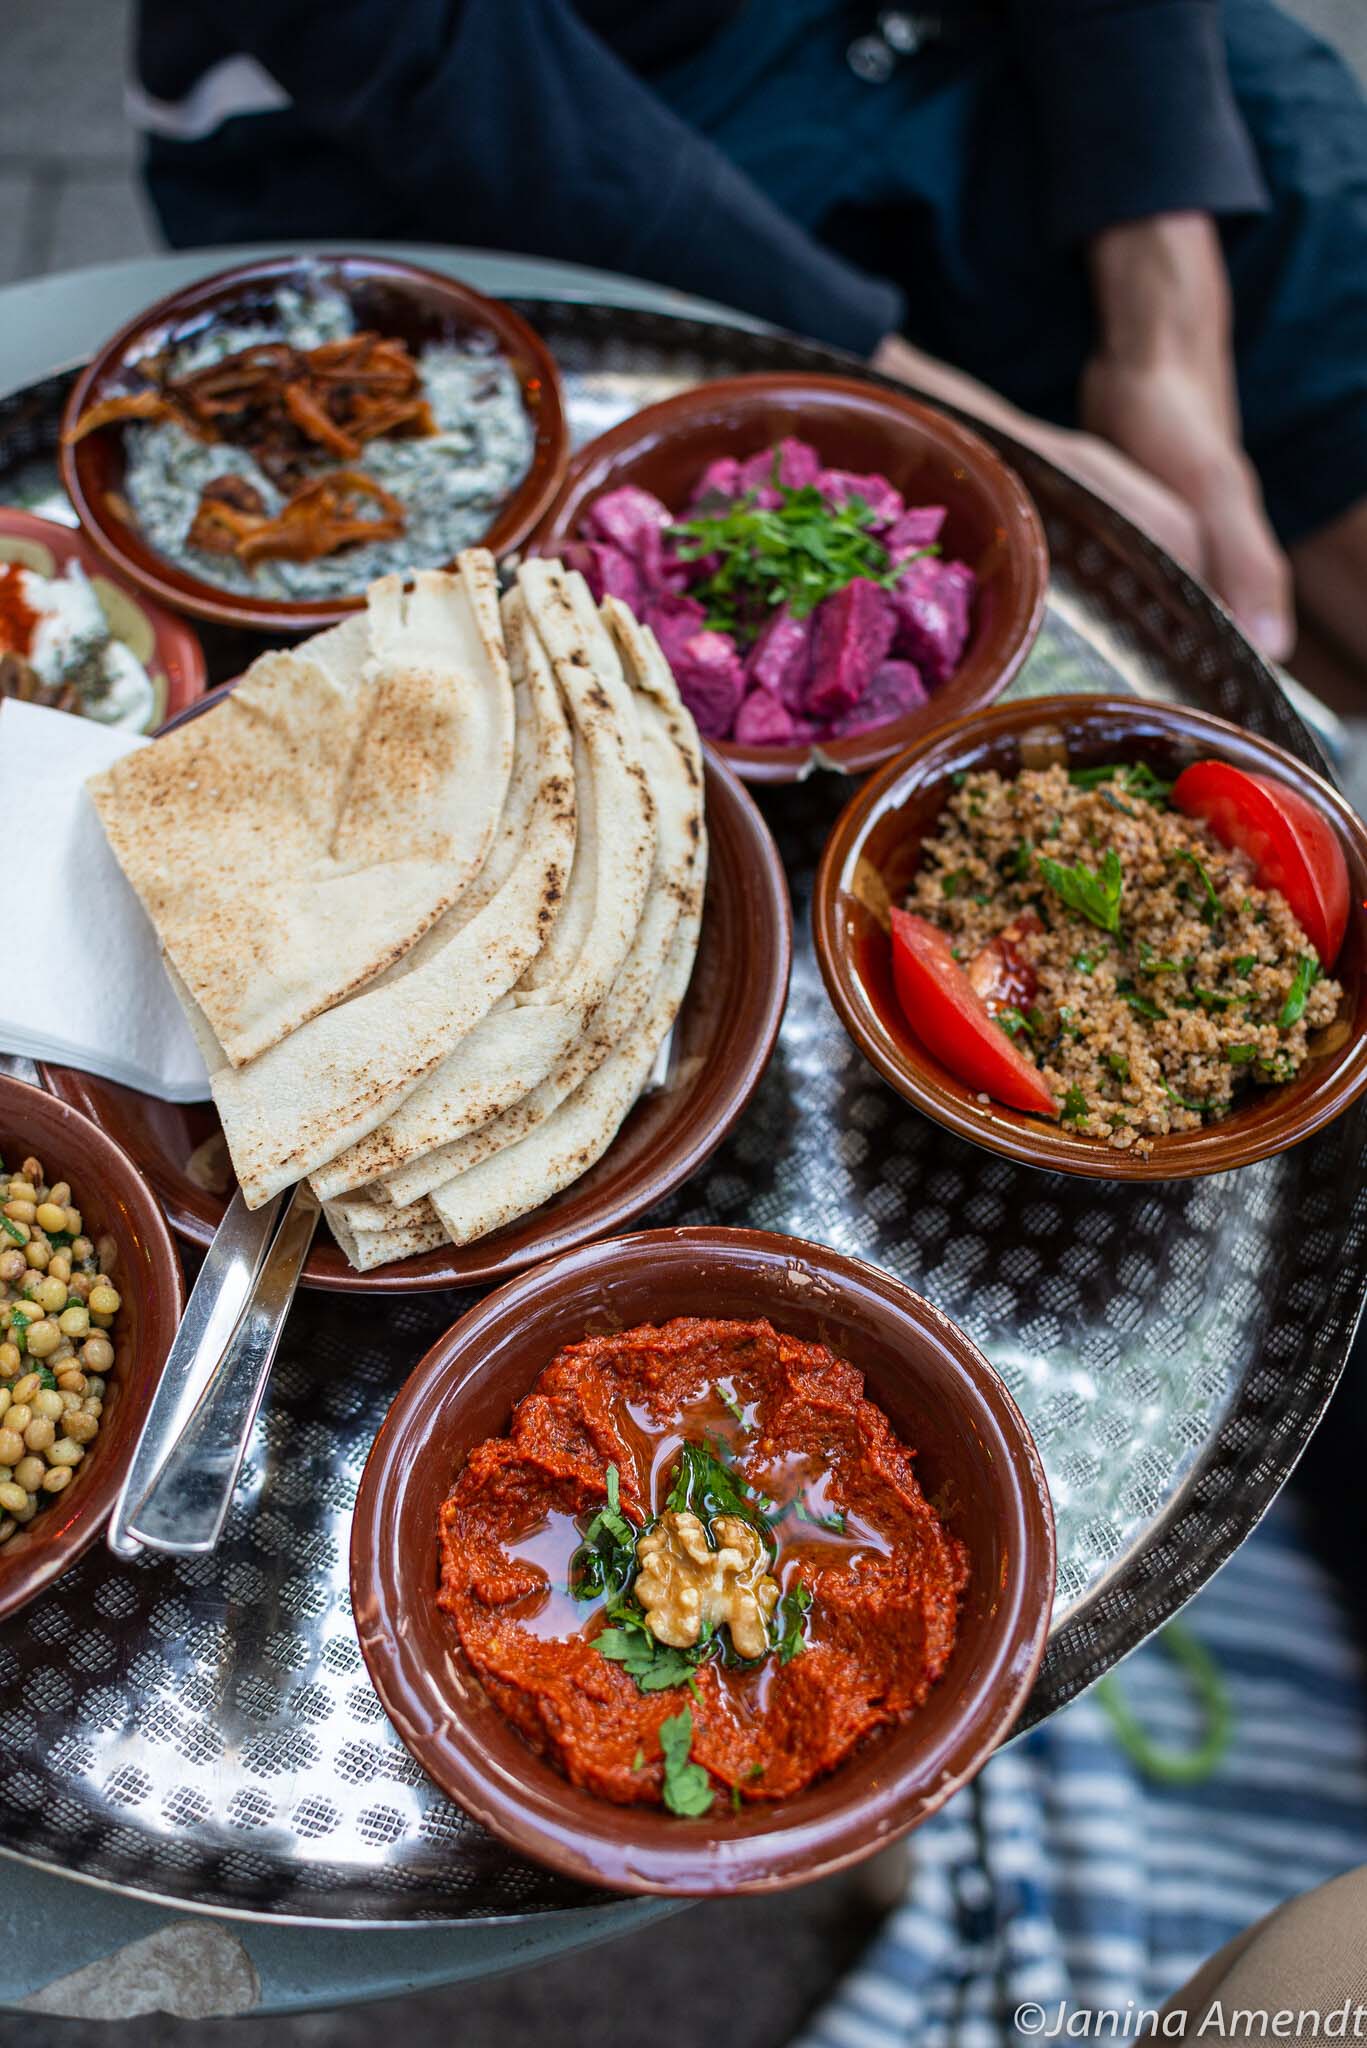 Sendling: Libanesische Küche im Manouche